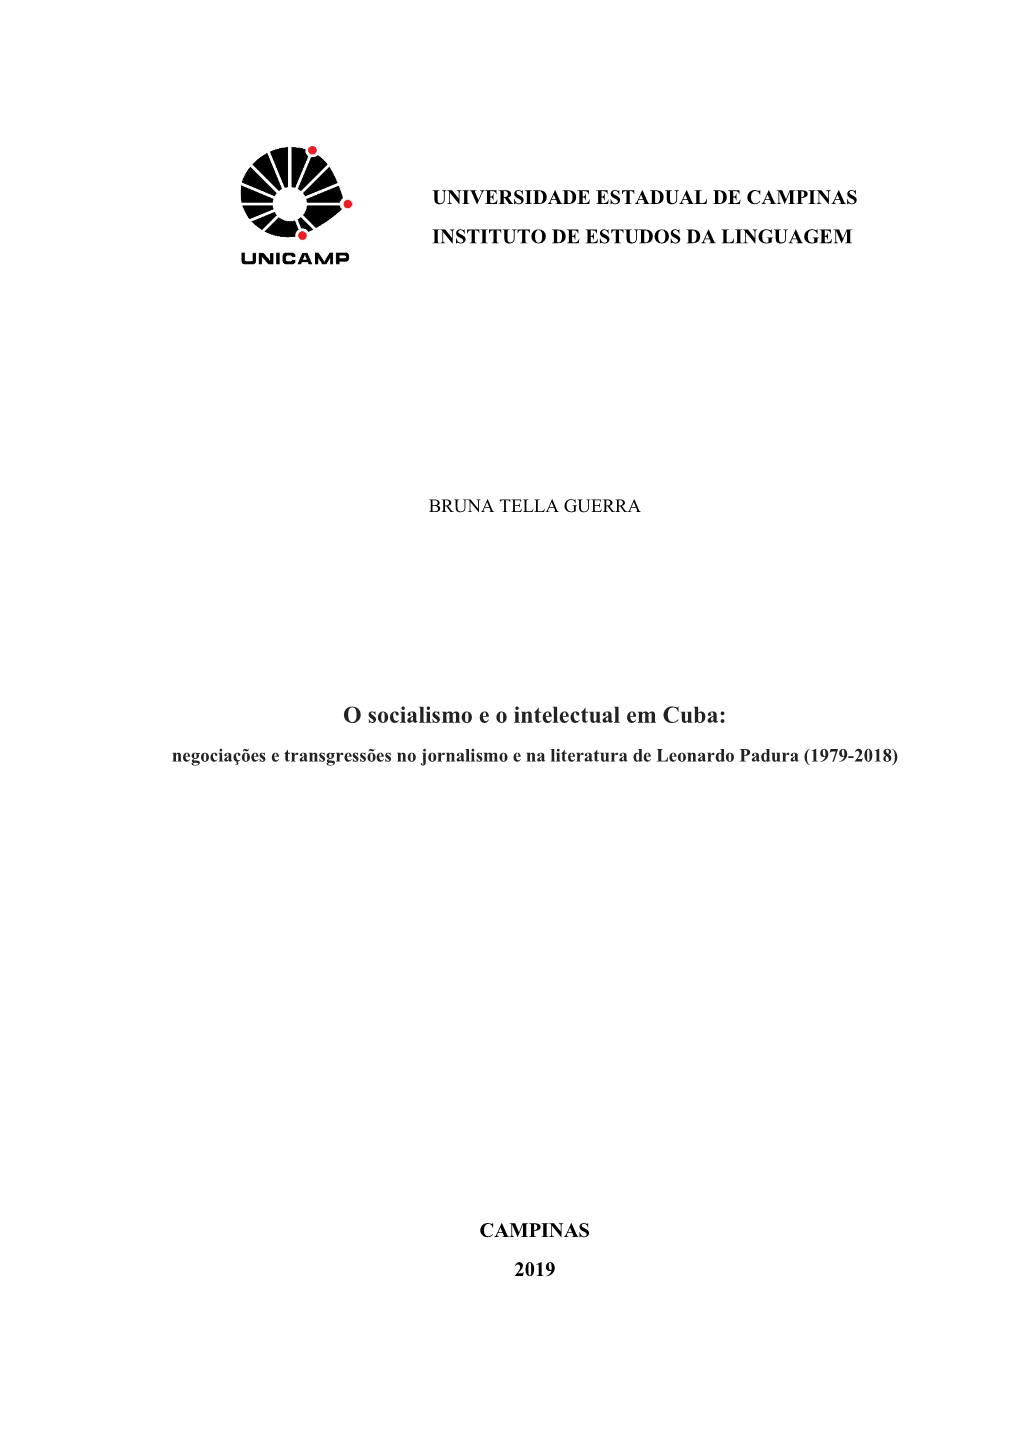 O Socialismo E O Intelectual Em Cuba: Negociações E Transgressões No Jornalismo E Na Literatura De Leonardo Padura (1979-2018)